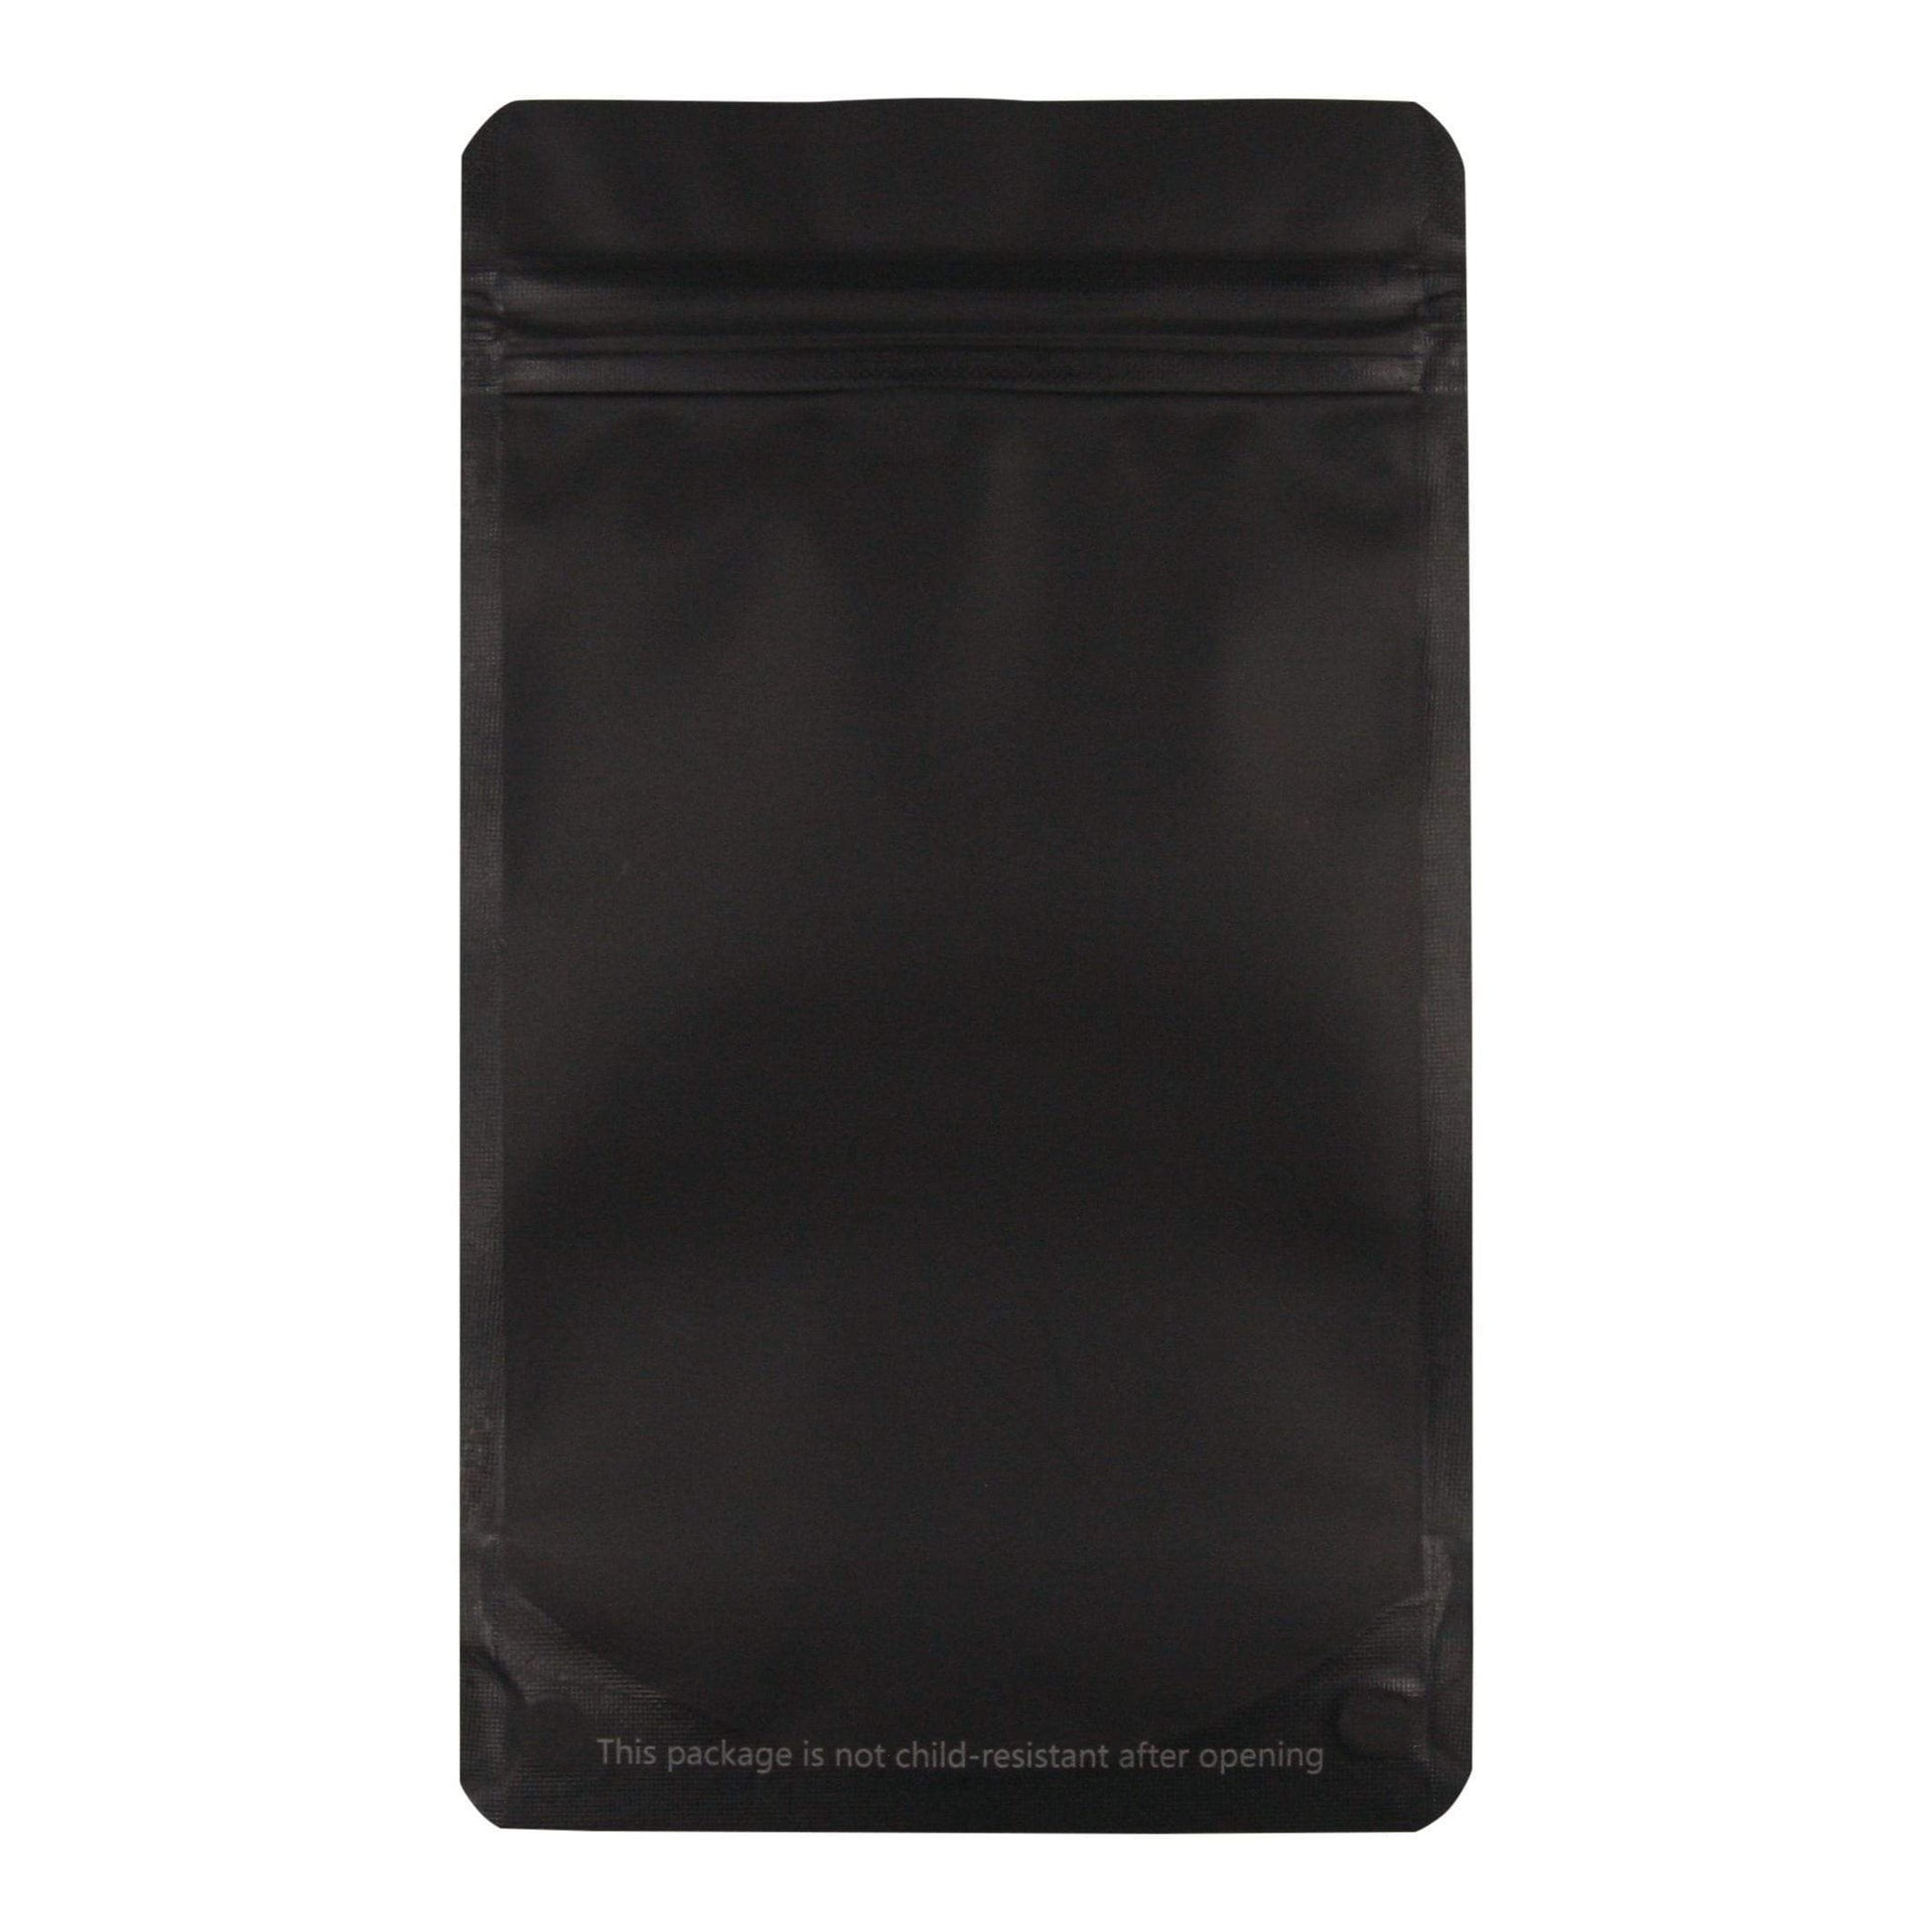 Bag King Opaque Mylar Bag (1/4th oz)